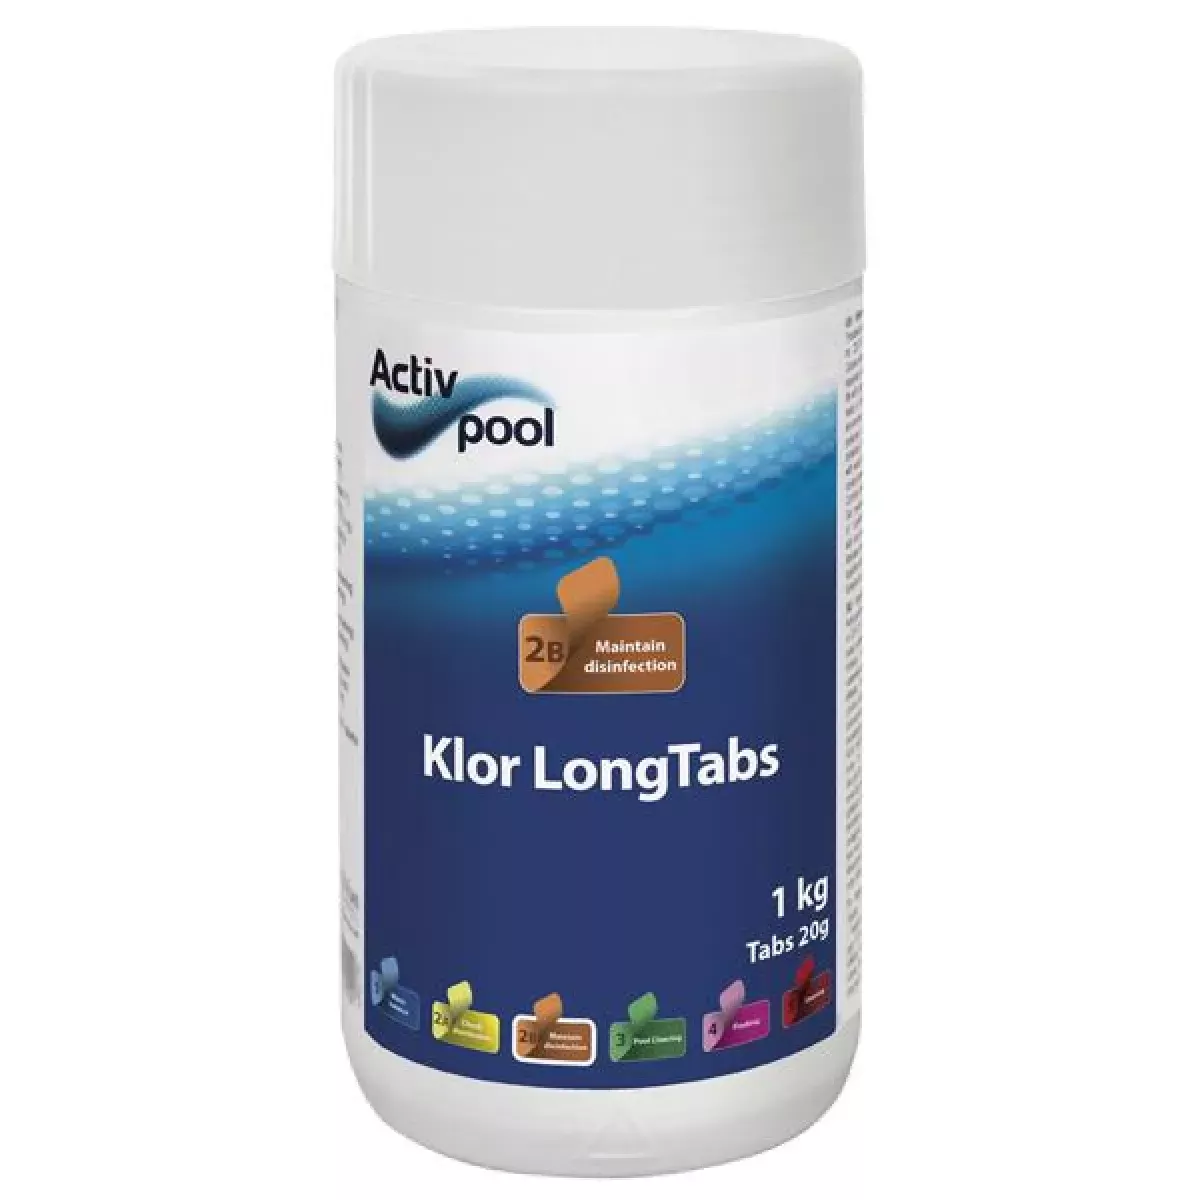 #1 - Activ Pool Klor LongTabs 20G 1 kg